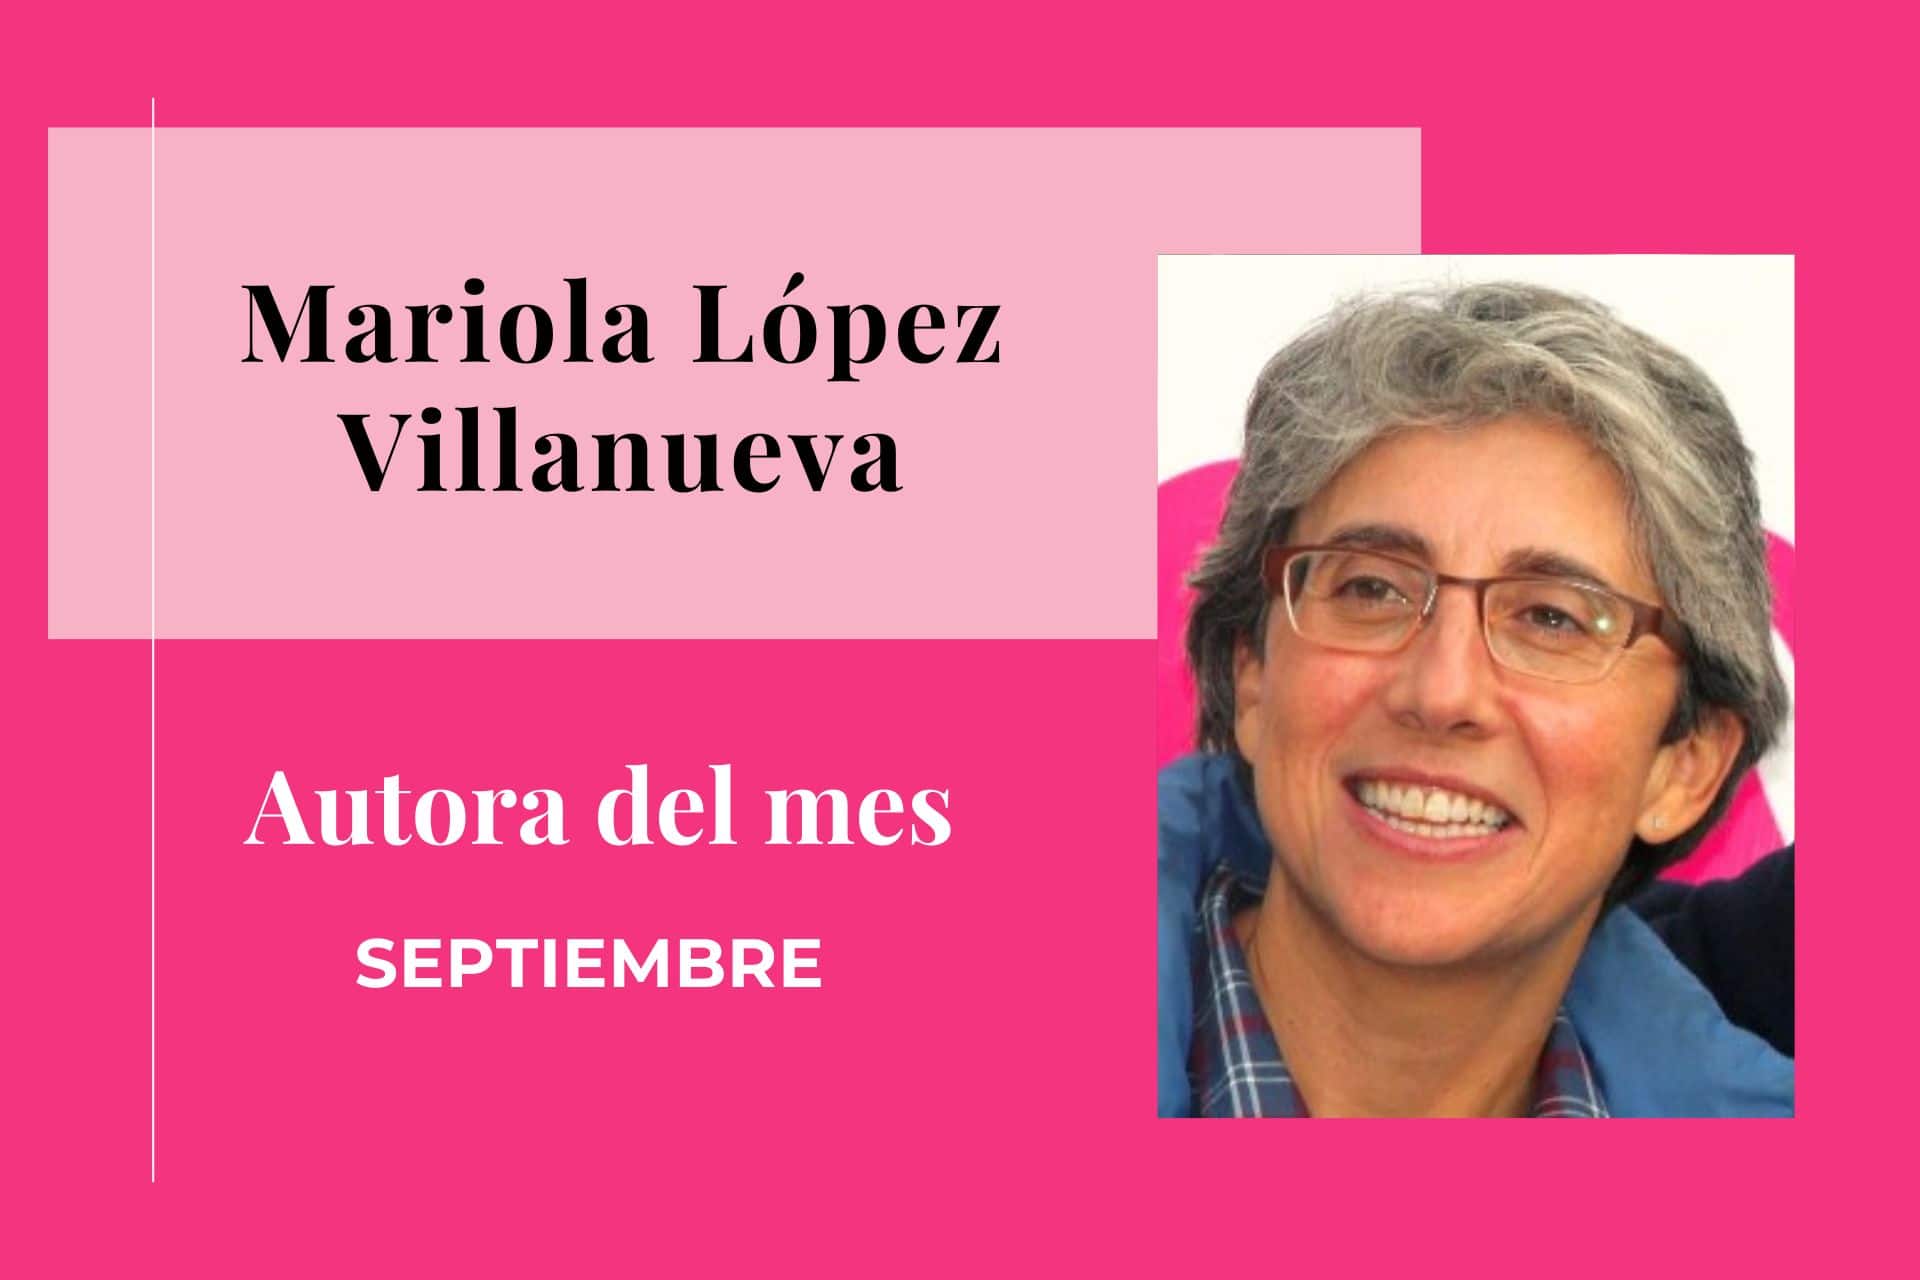 Mariola López Villanueva